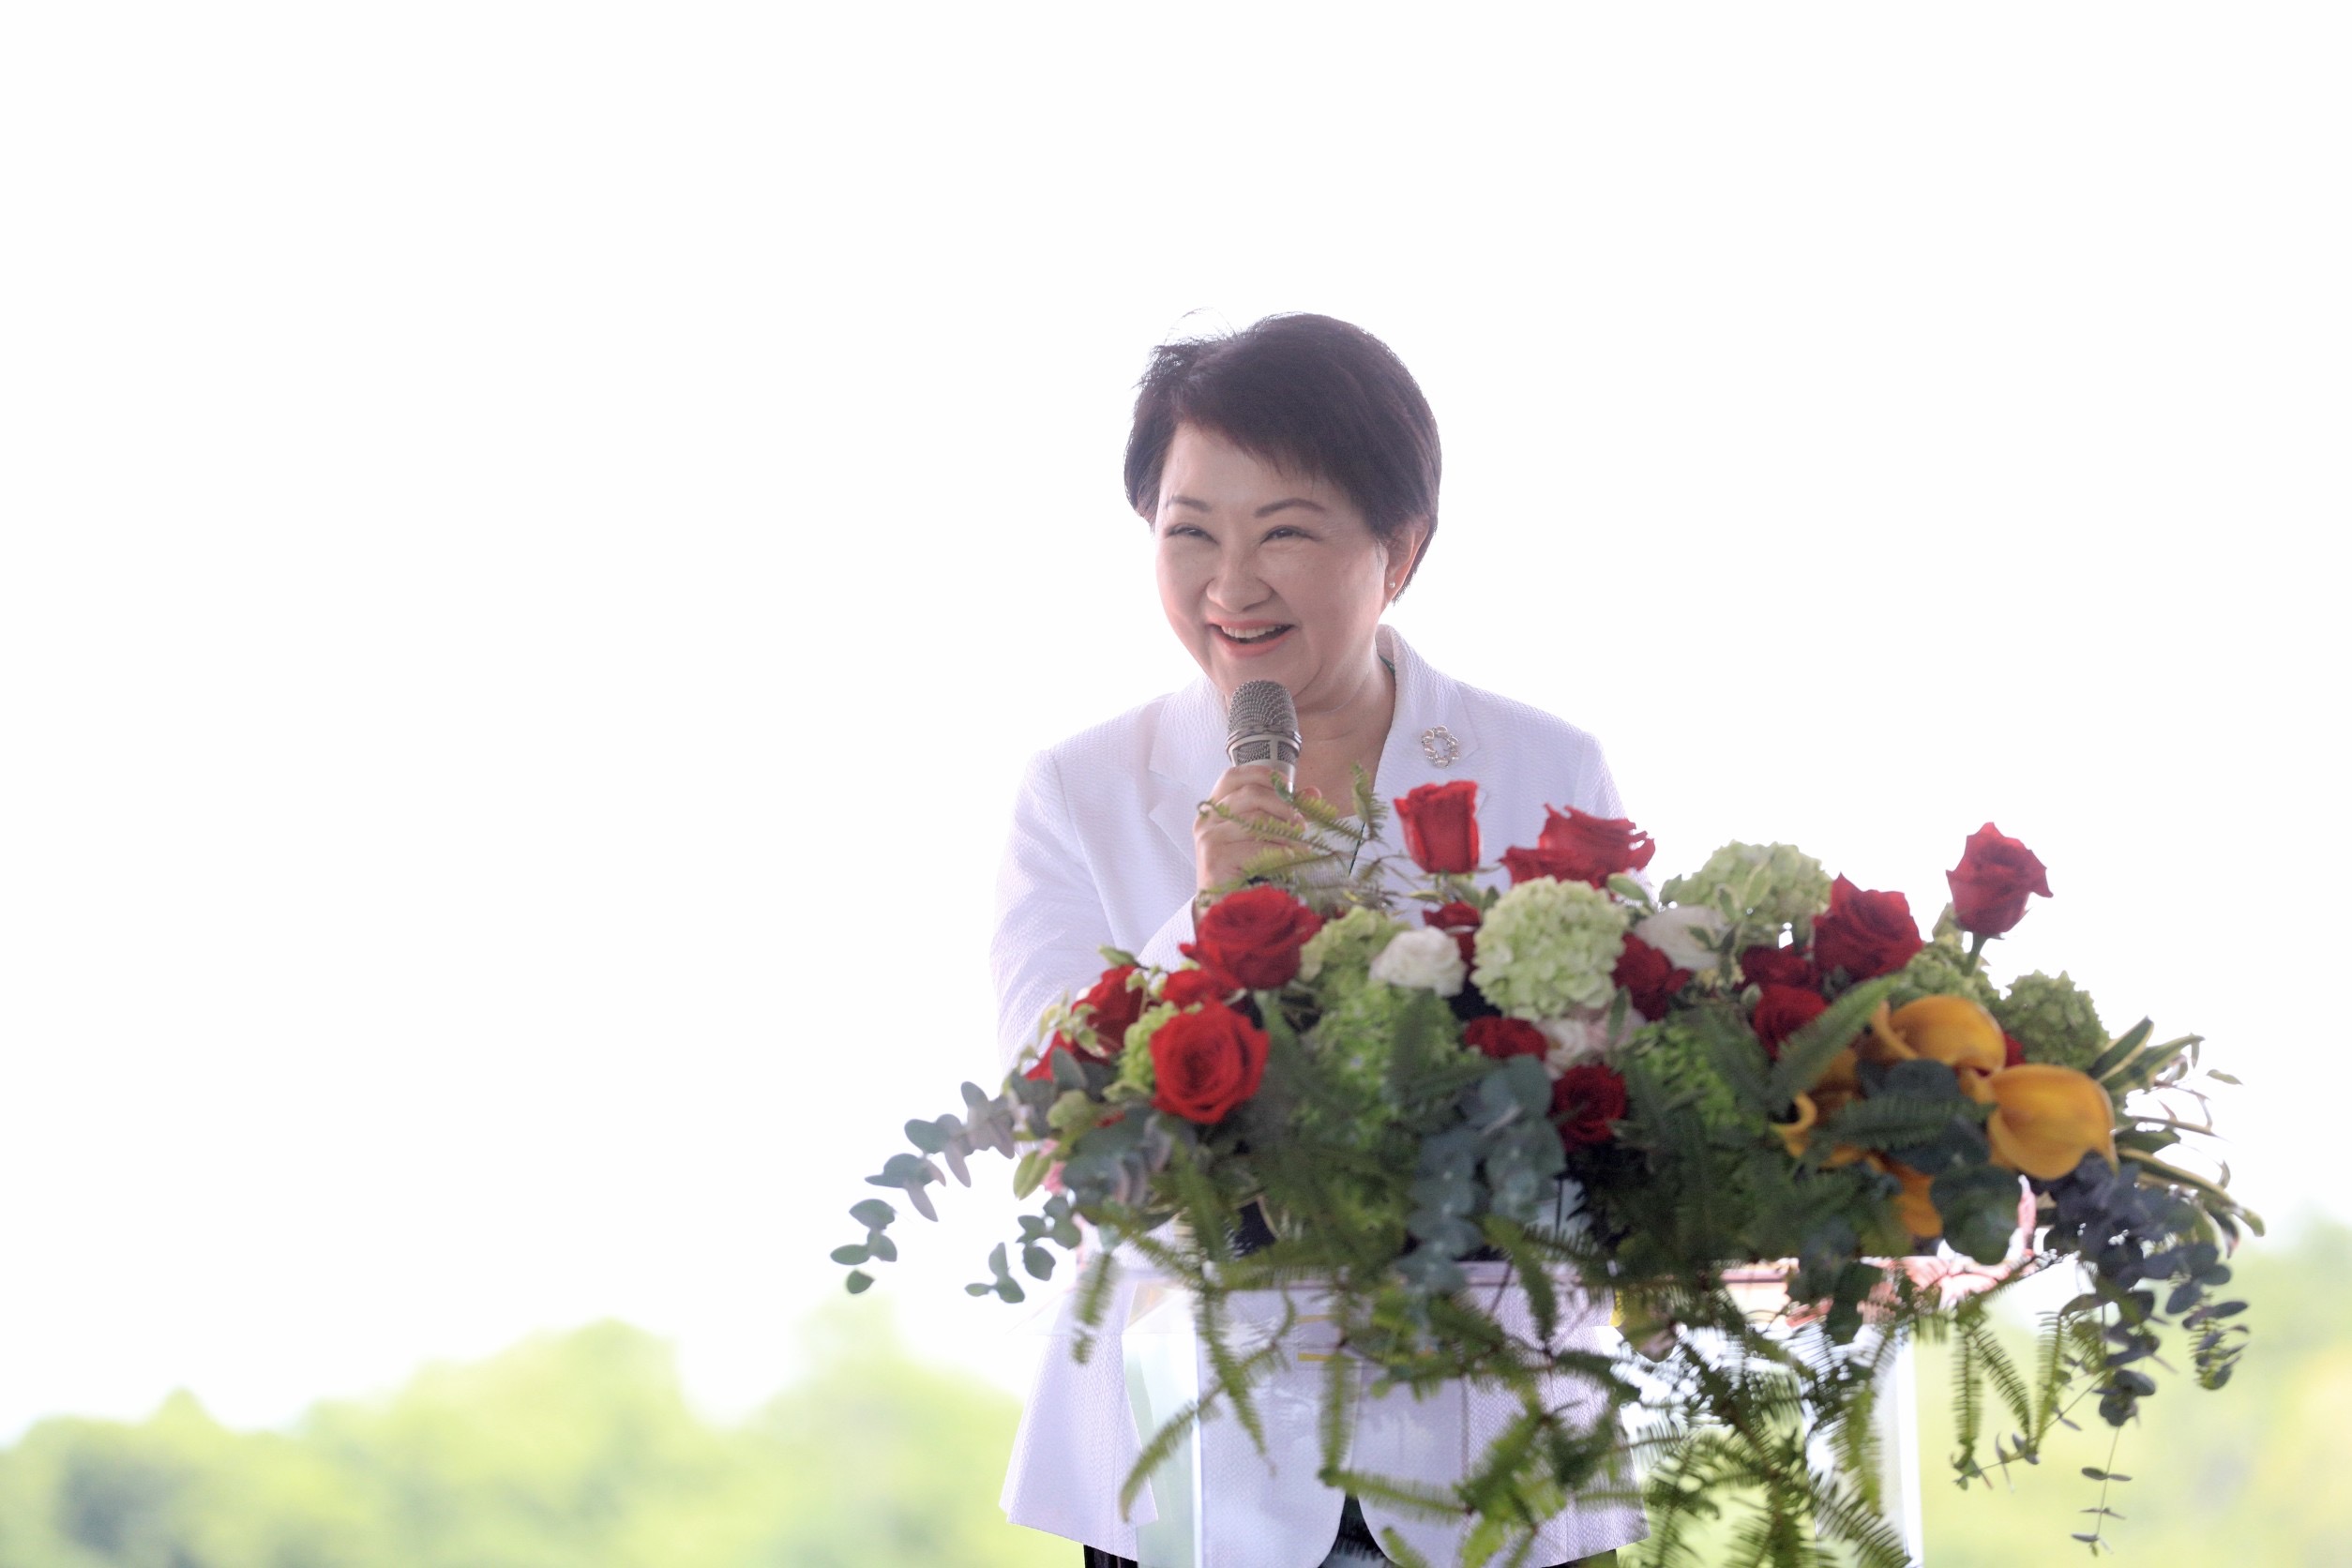 台中市长卢秀燕向议会请假，参加520正副总统就职典礼，蓝绿议员点头同意。图/联合报系照片